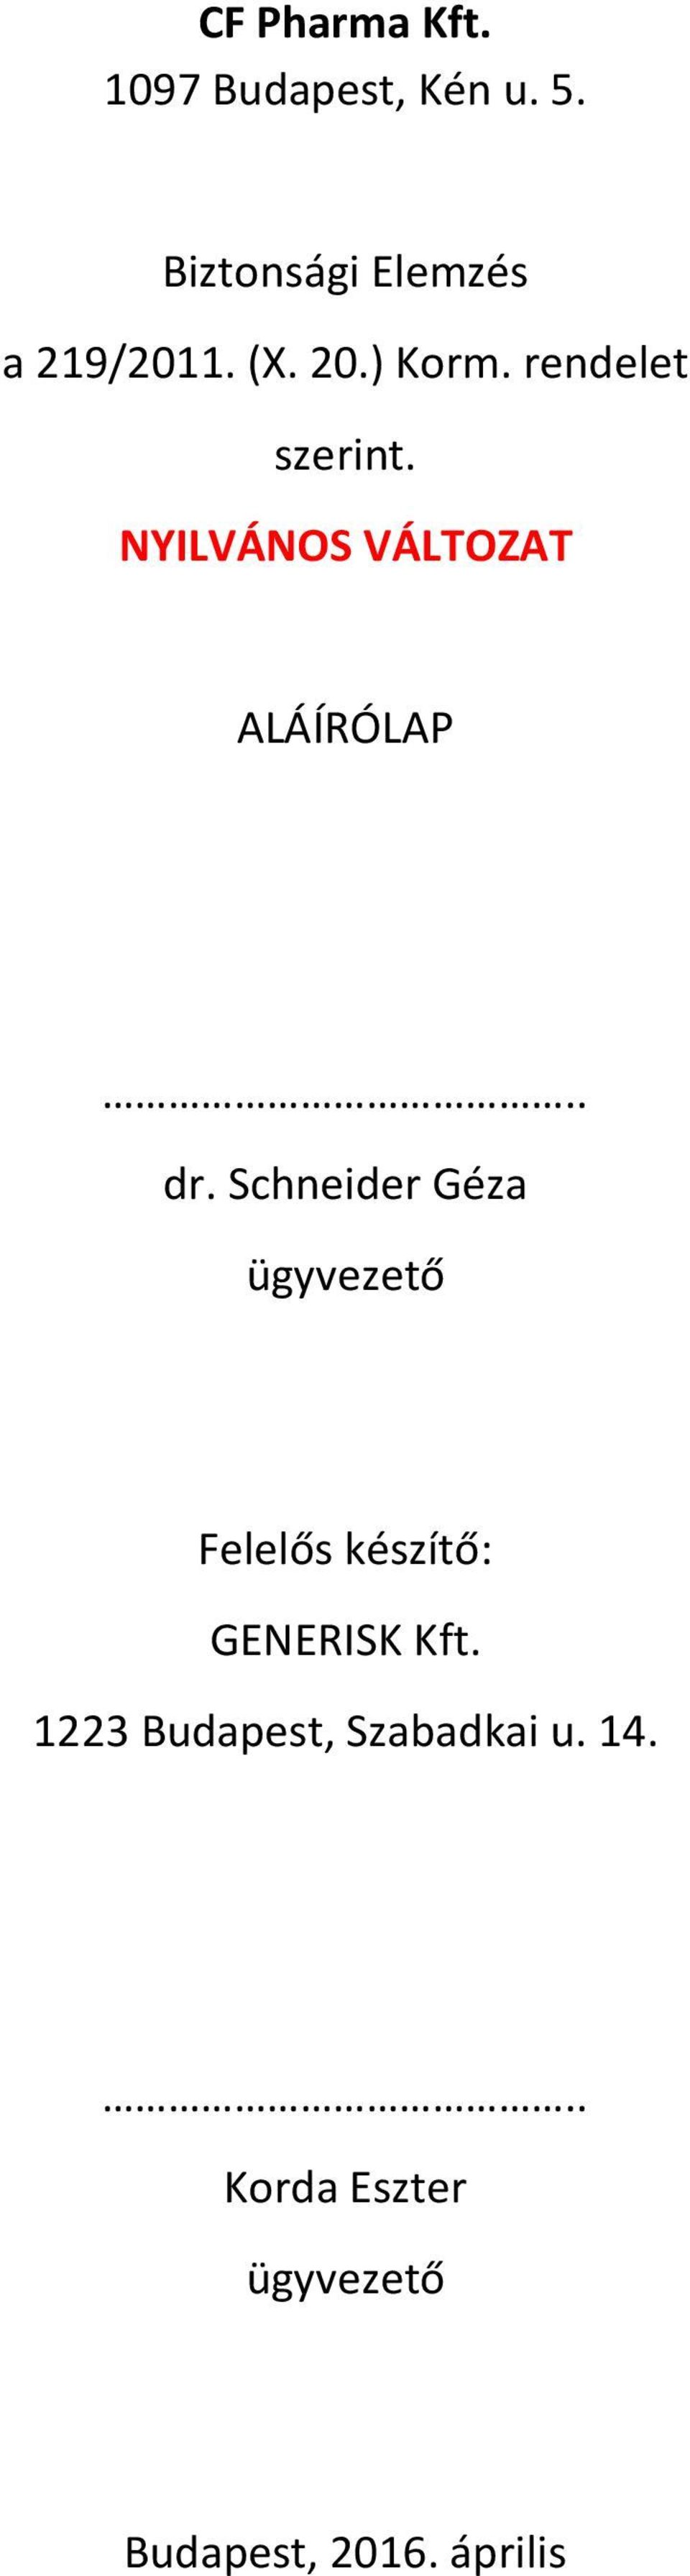 CF Pharma Kft Budapest, Kén u. 5. BIZTONSÁGI ELEMZÉS a 219/2011. (X. 20.)  Korm. rendelet szerint. NYILVÁNOS VÁLTOZAT PDF Ingyenes letöltés